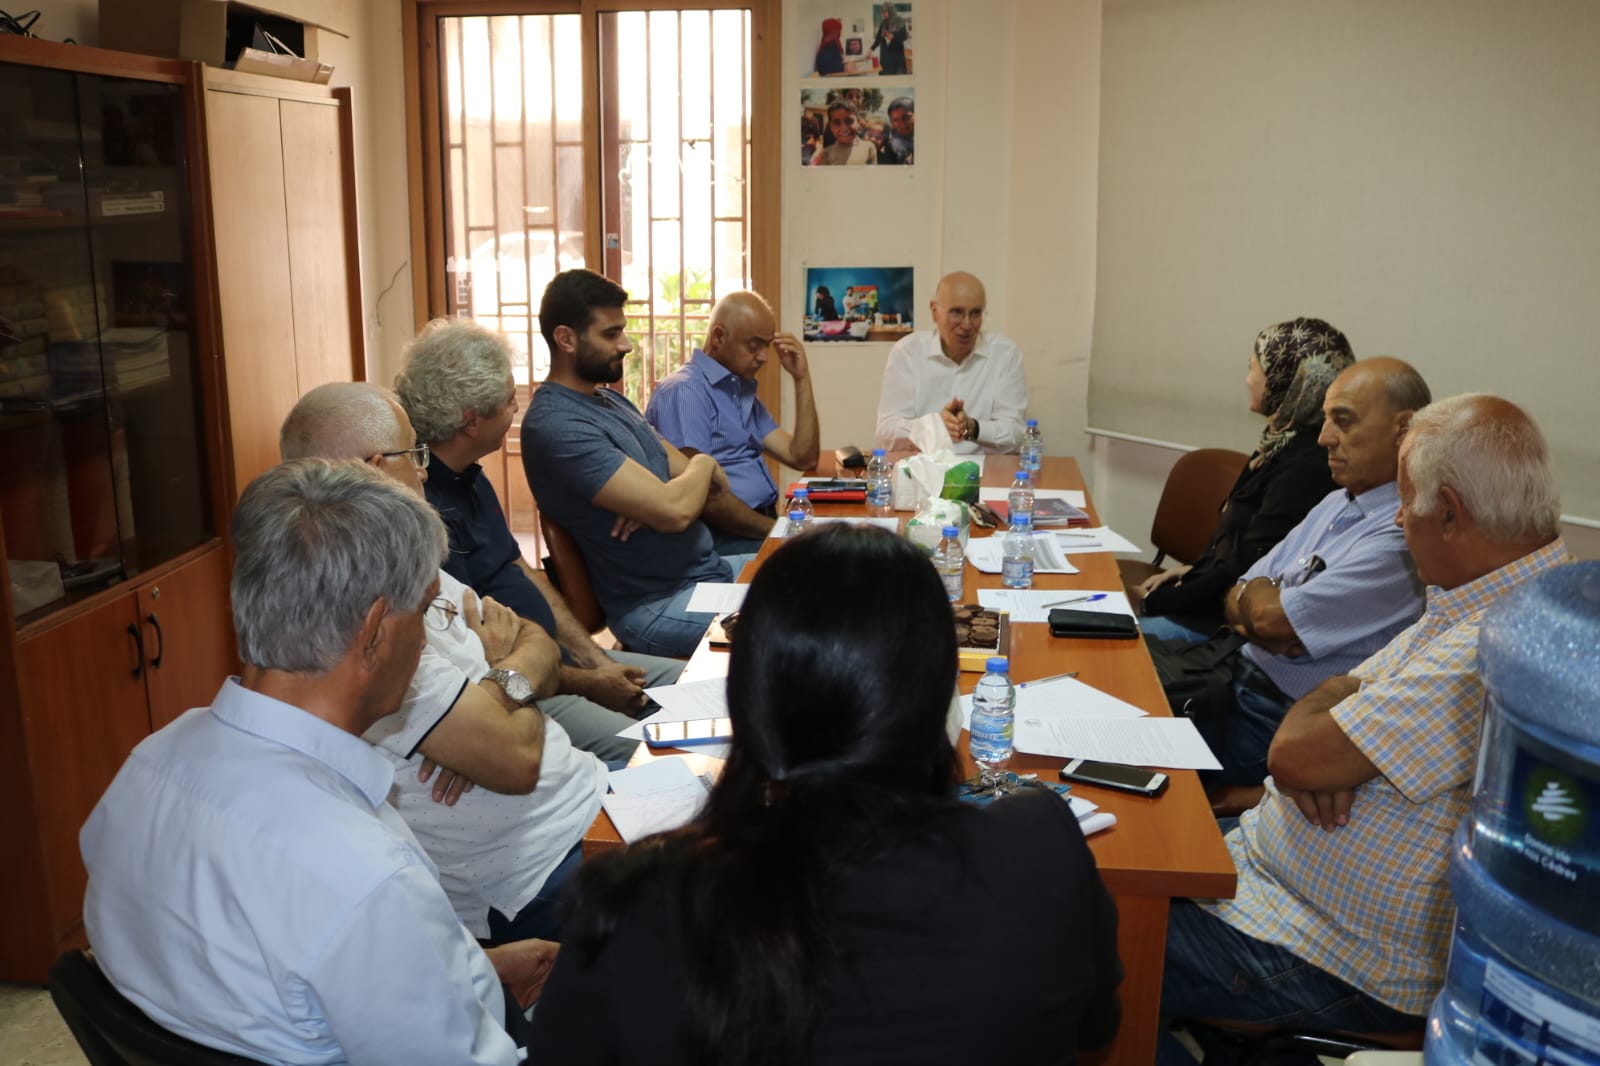 تجمع الهيئات الأهلية التطوعية ولجنة المتابعة لمنظمات المجتمع المدني اللبناني والفلسطيني في لبنان